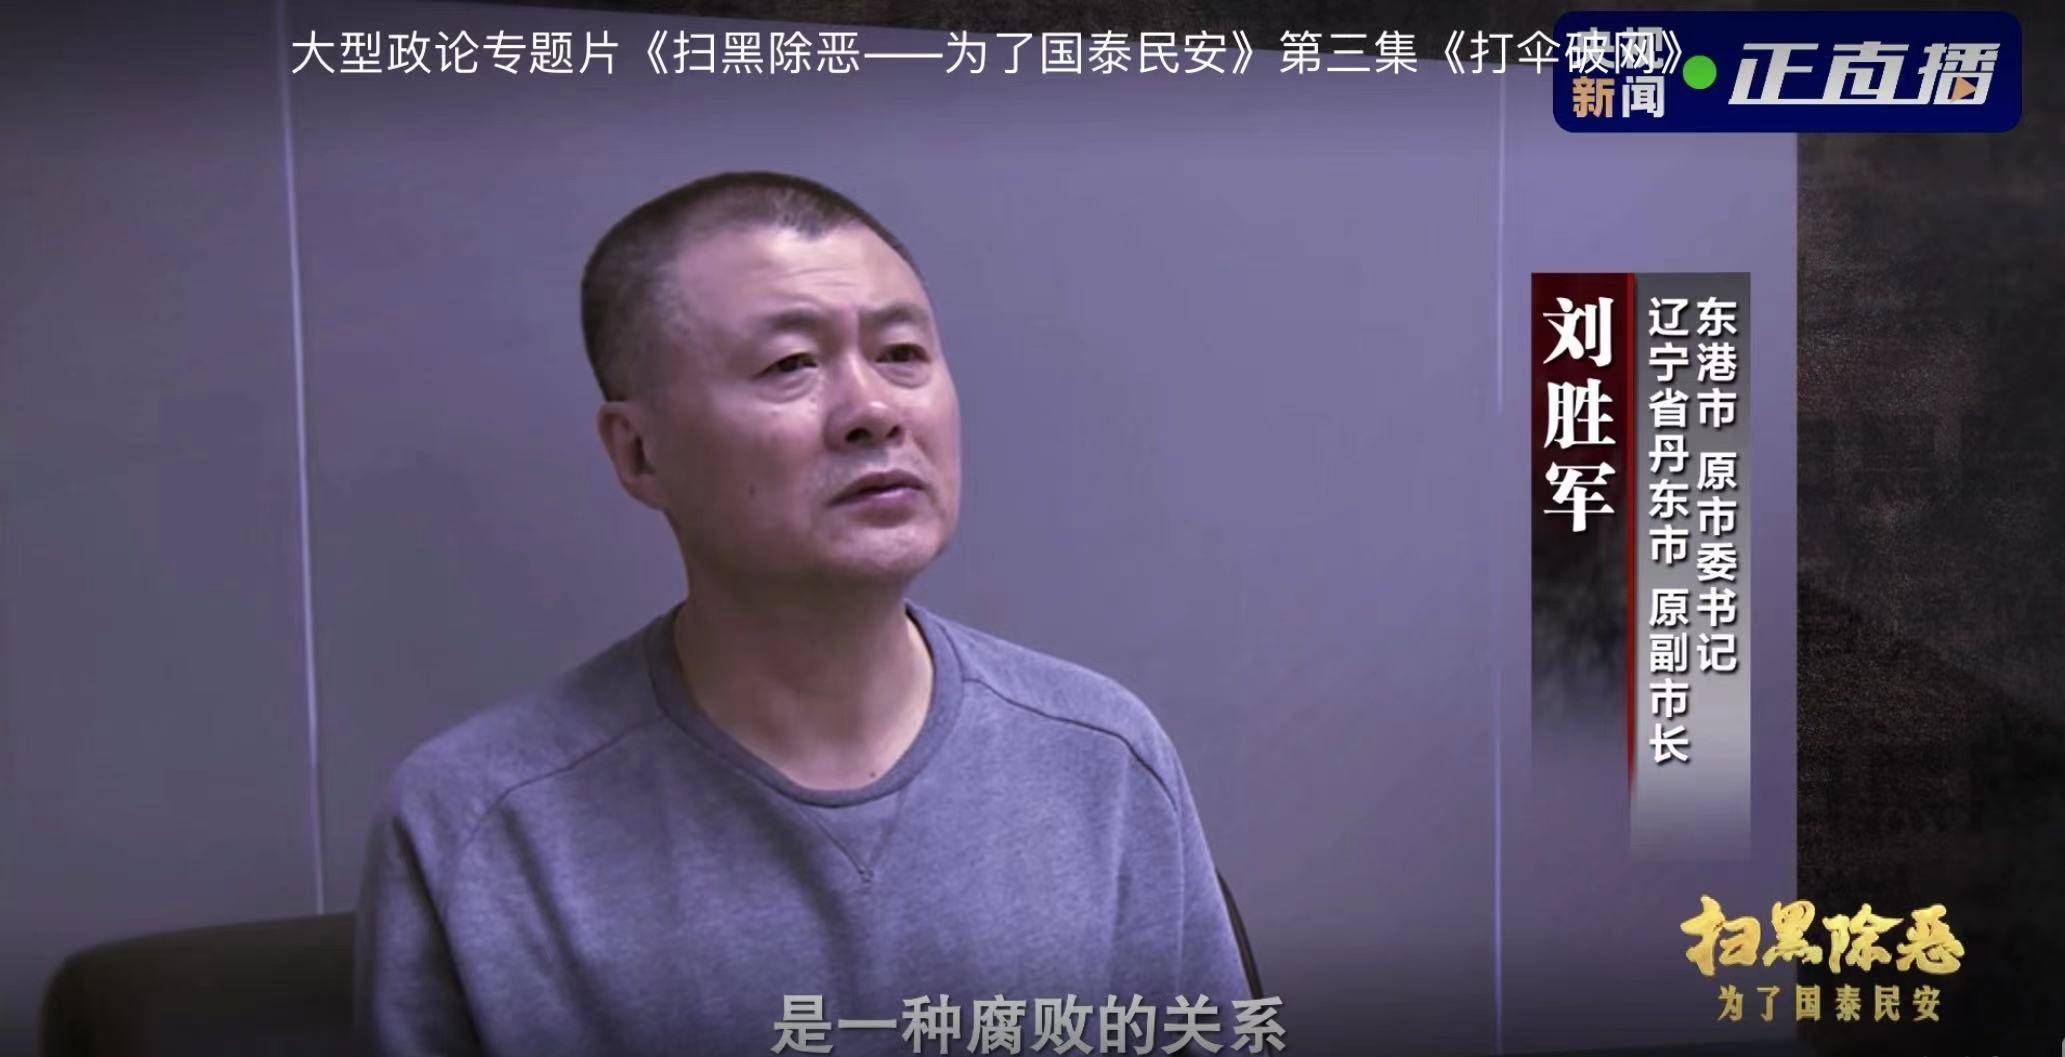 宋氏兄弟盘踞三十年,东港前市委书记刘胜军忏悔:成他家成员了